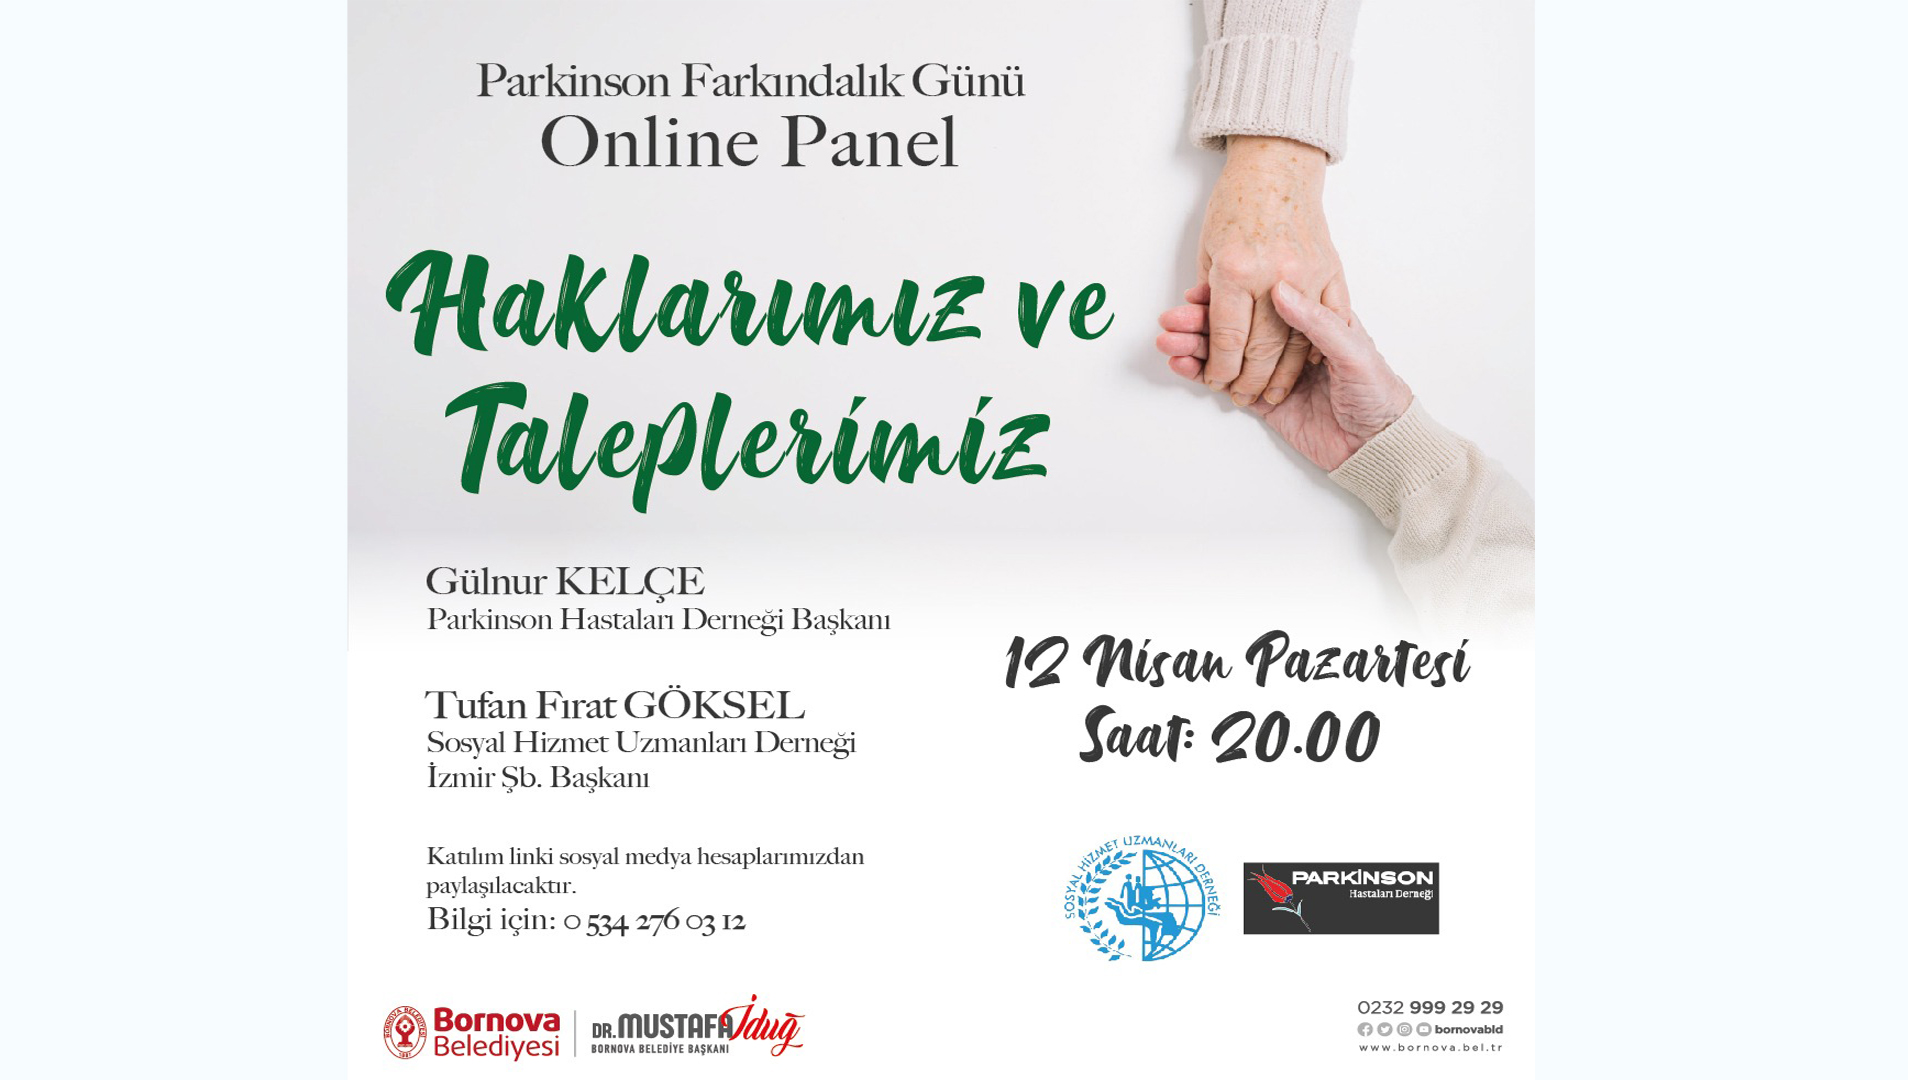  Bornova’da ‘Haklarımız ve Taleplerimiz’ Adlı Online Panel Yapılacak